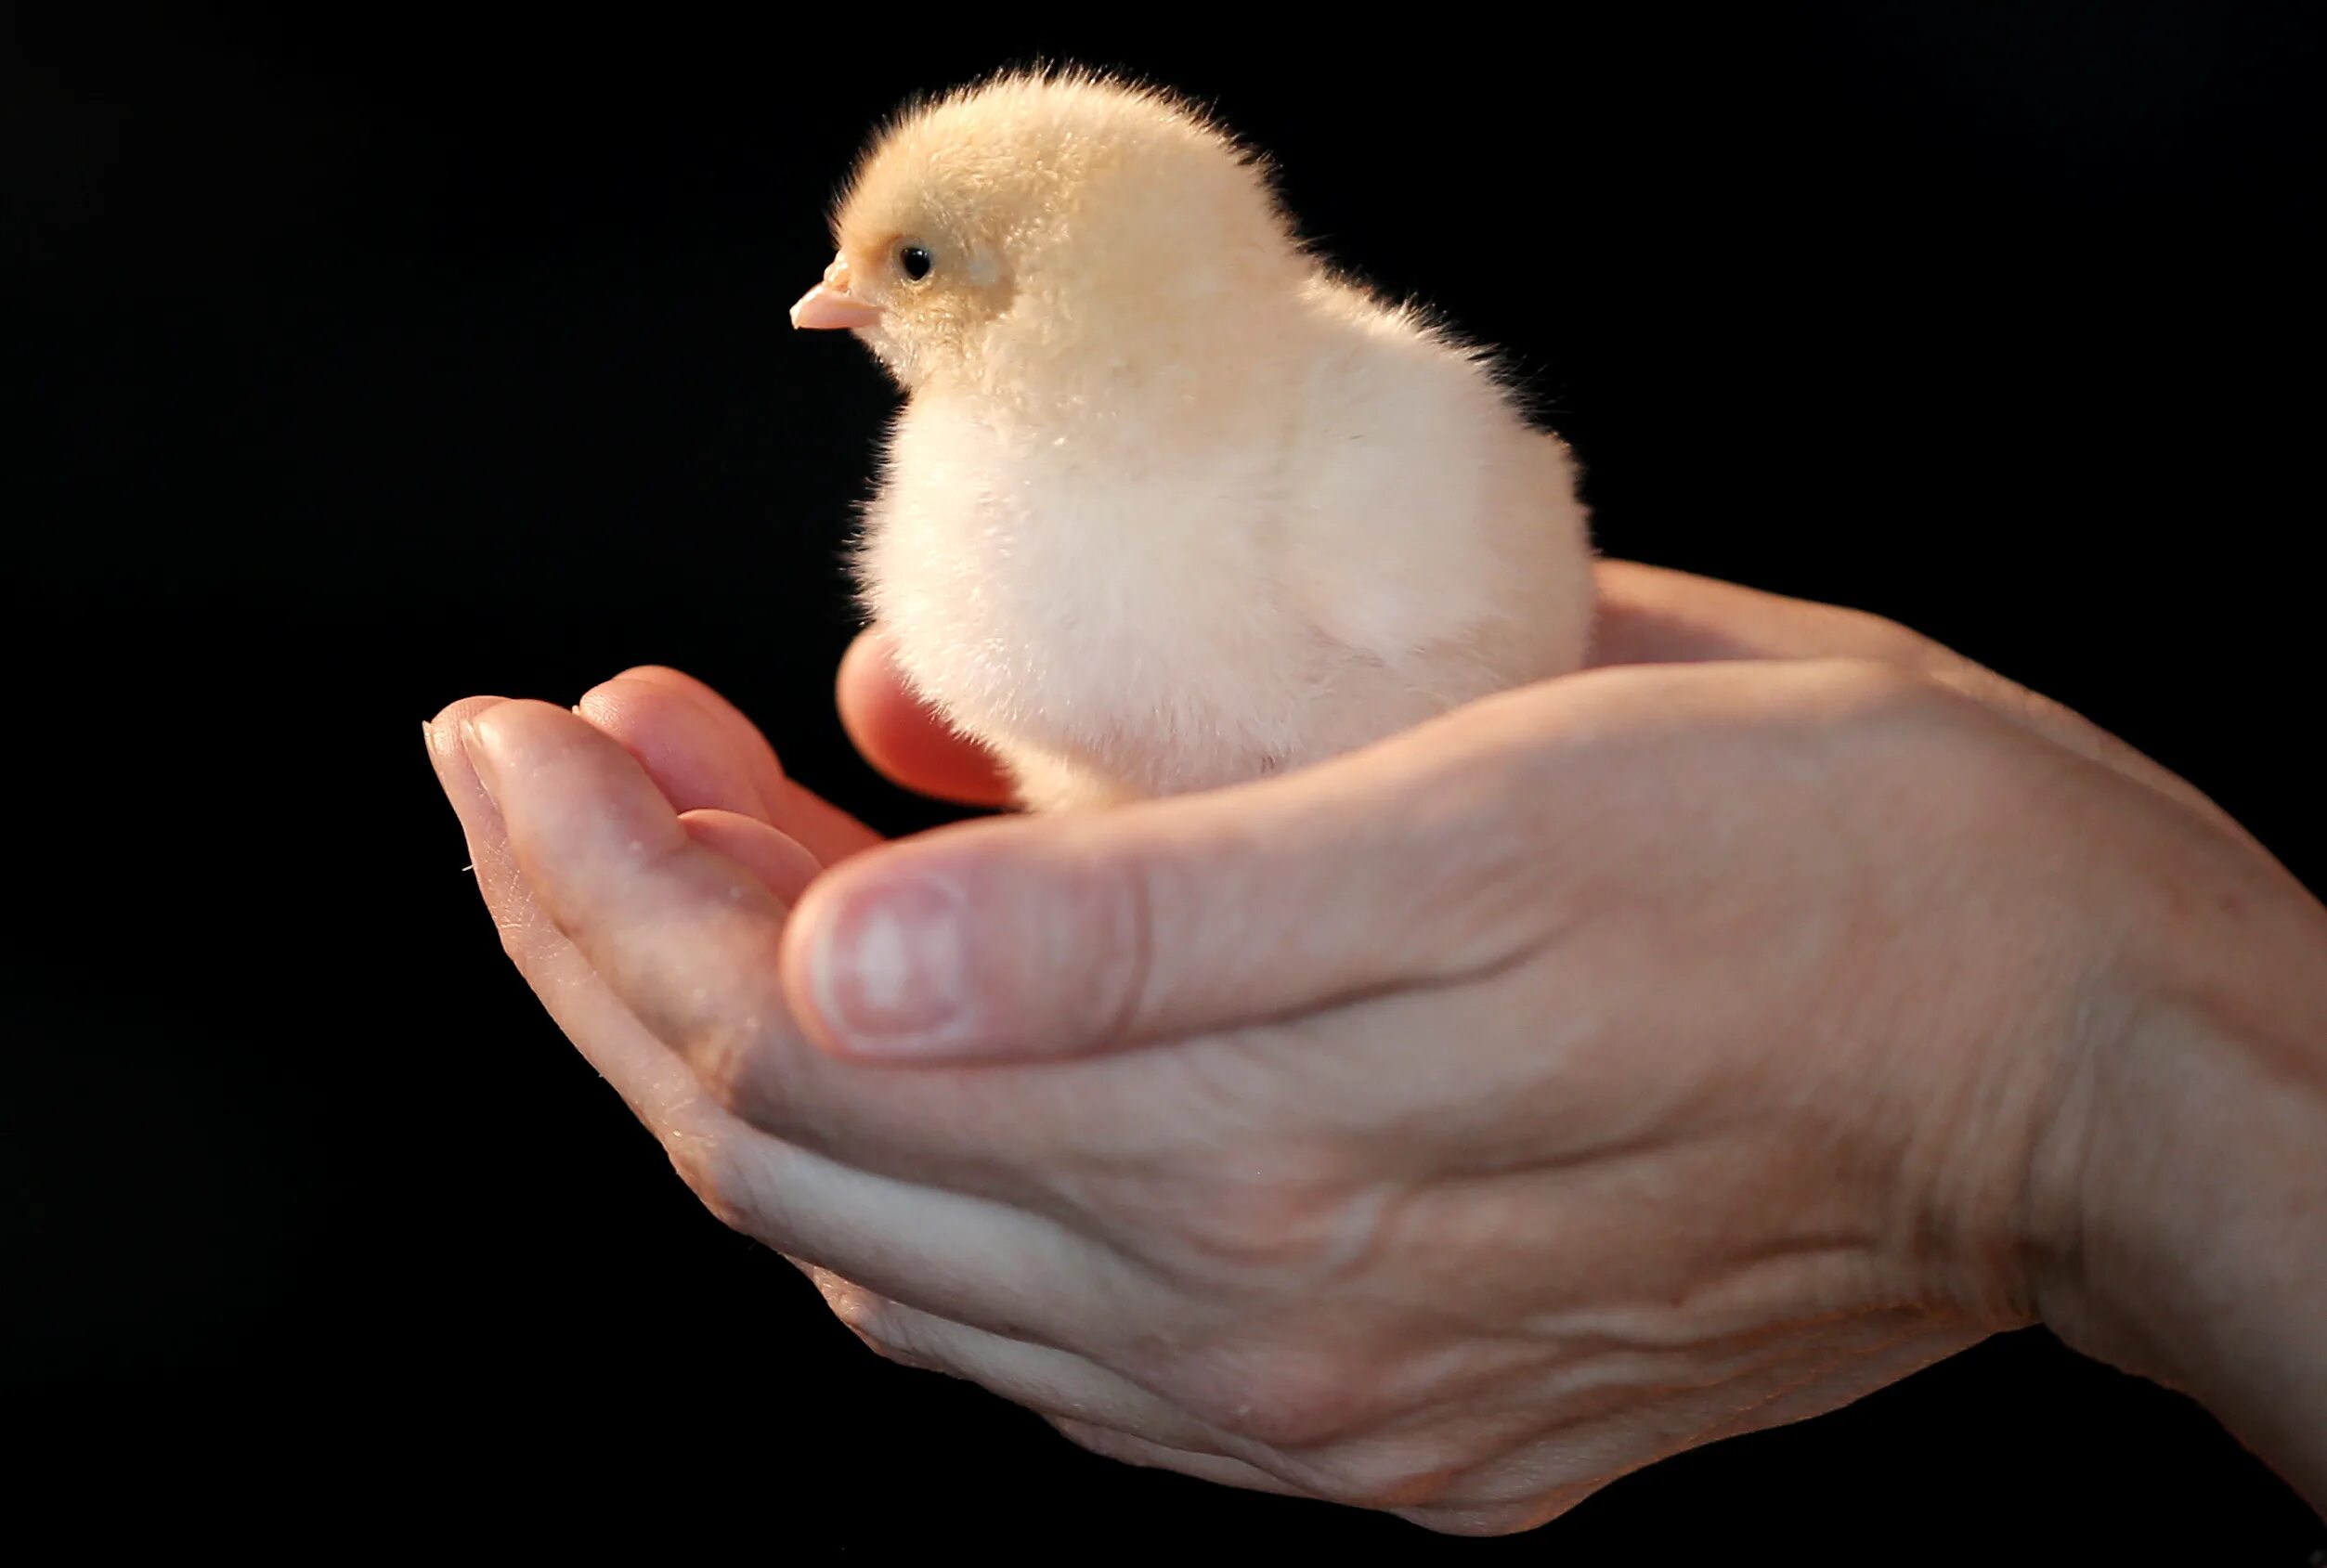 Где купить цыпленка живого. Цыпленок живой. Живой цыпленок в руке. Расккупить цыплёнка живого. Цыплята купить живые.